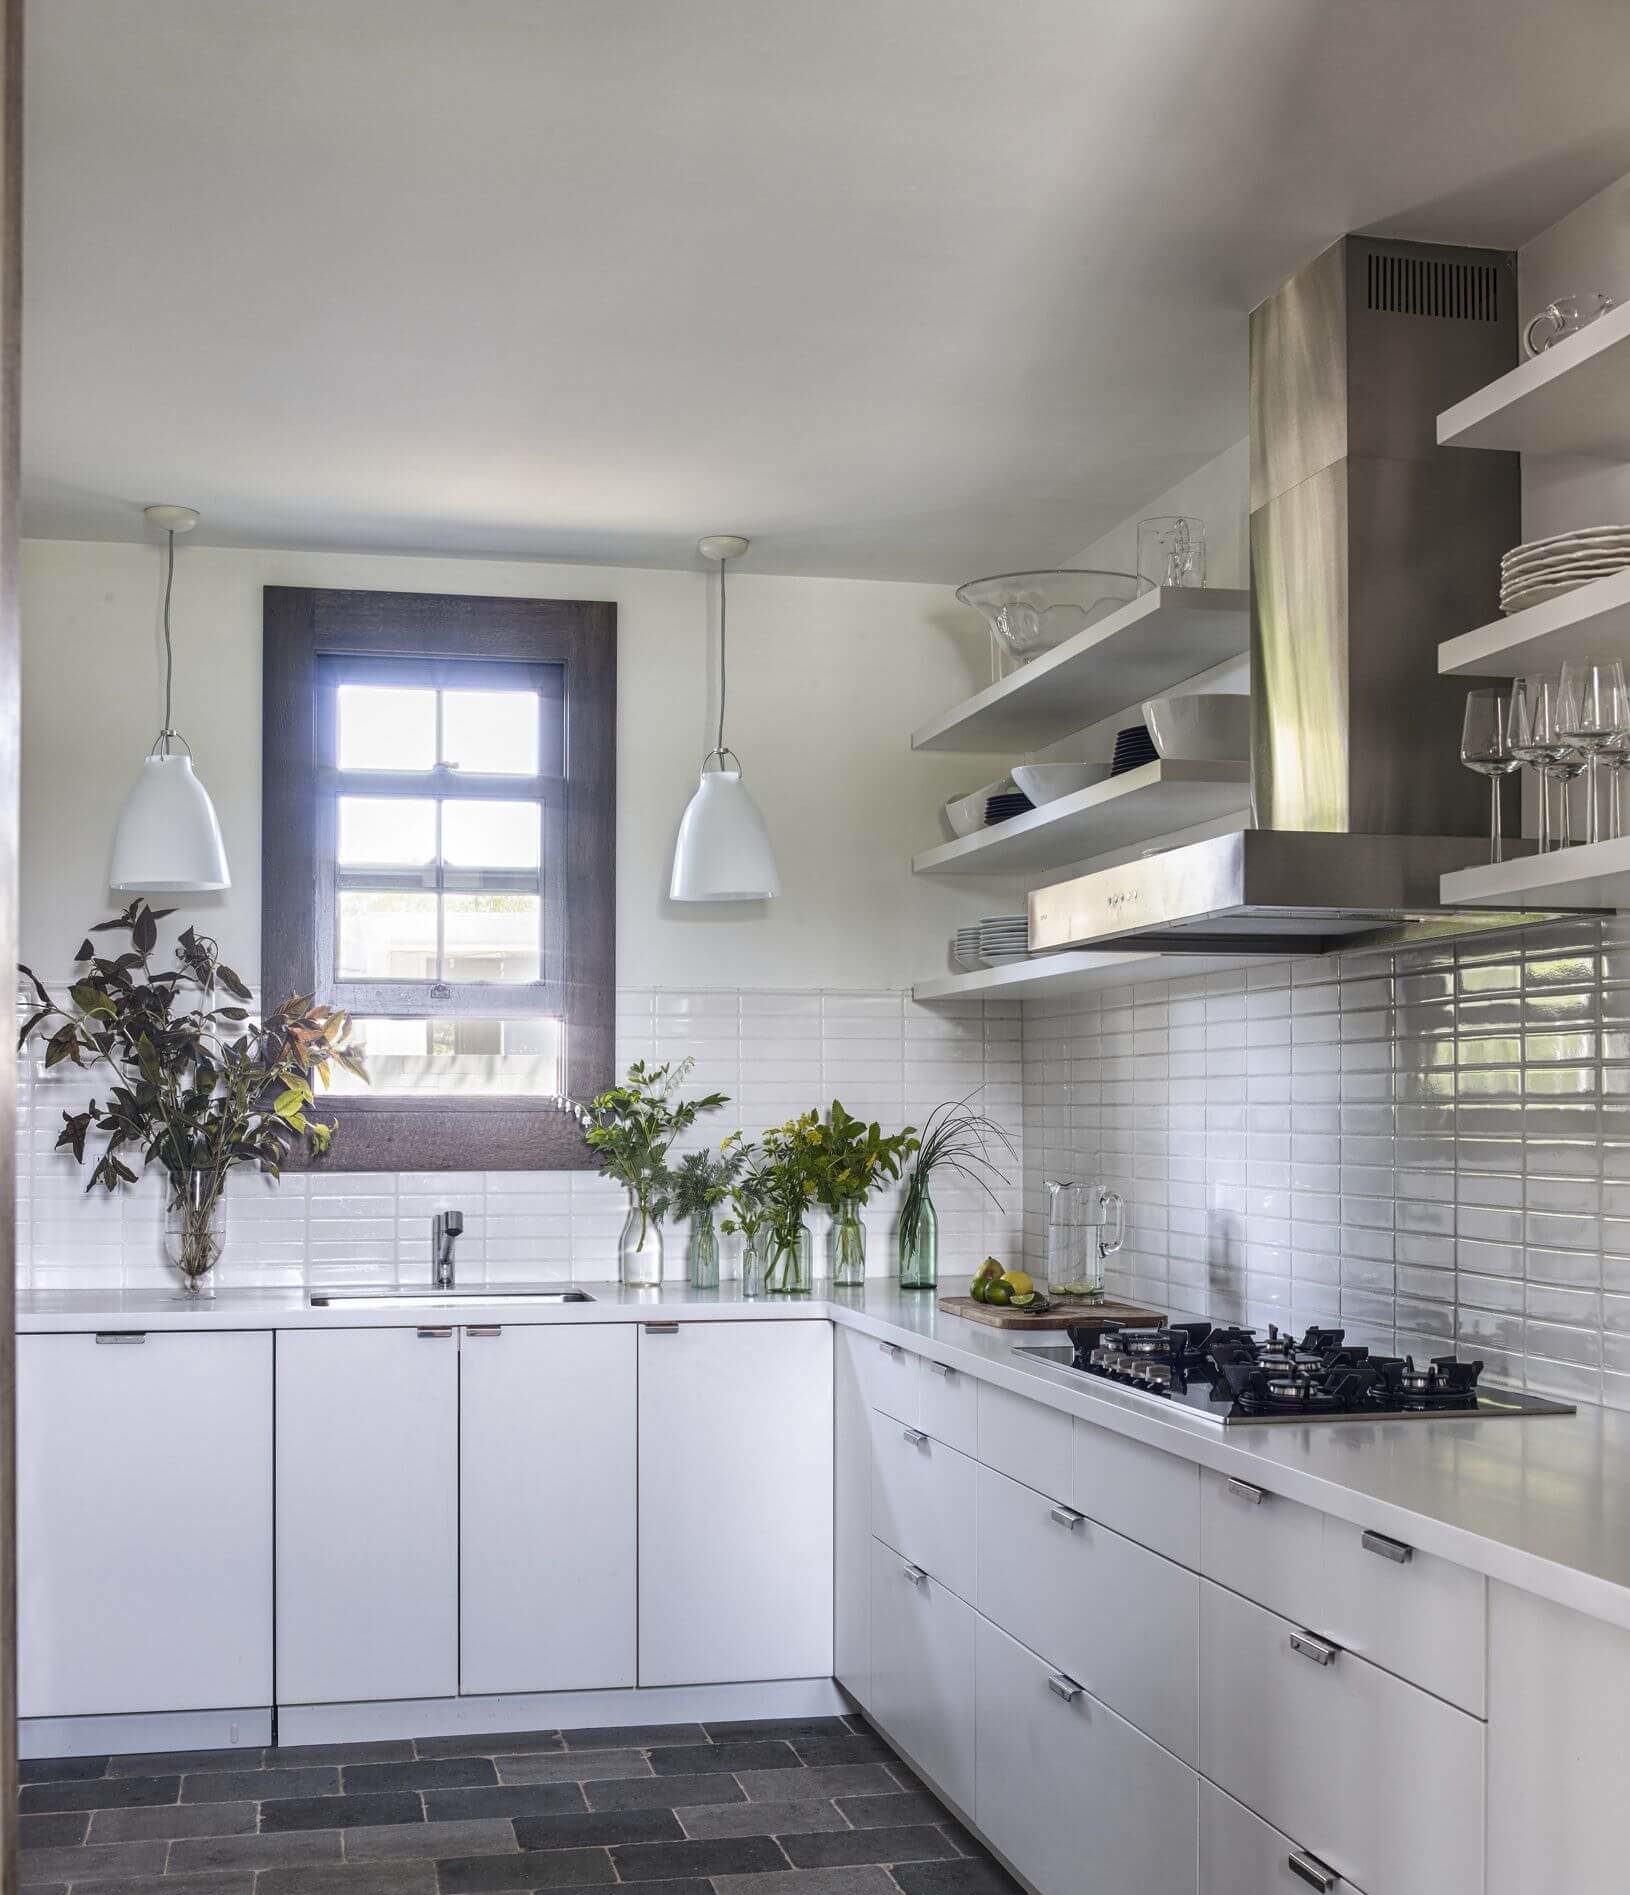  minimalist kitchen design